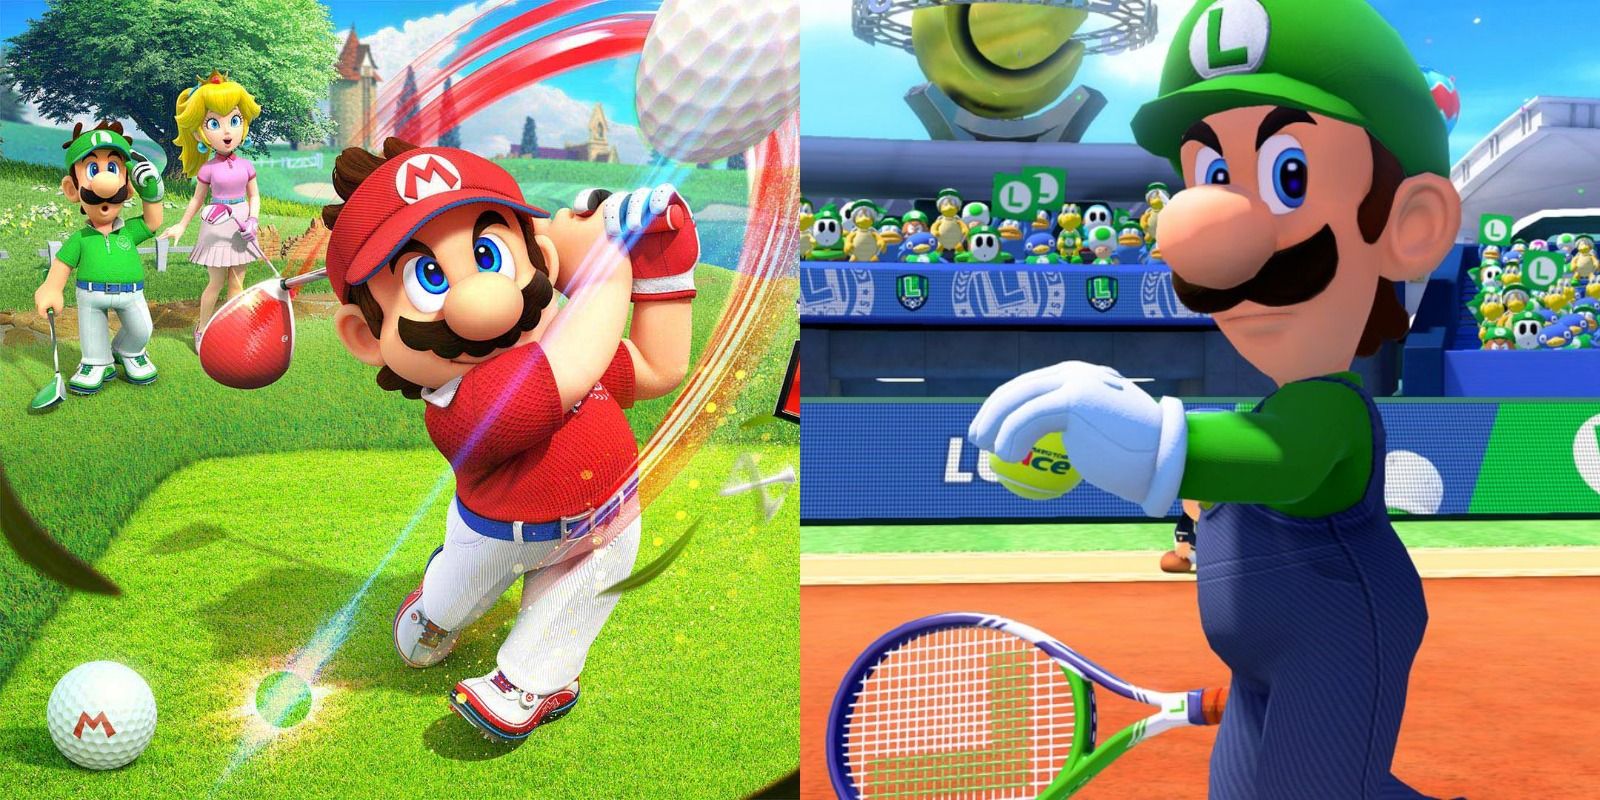 Split image of Mario playing golf and Luigi playing tennis